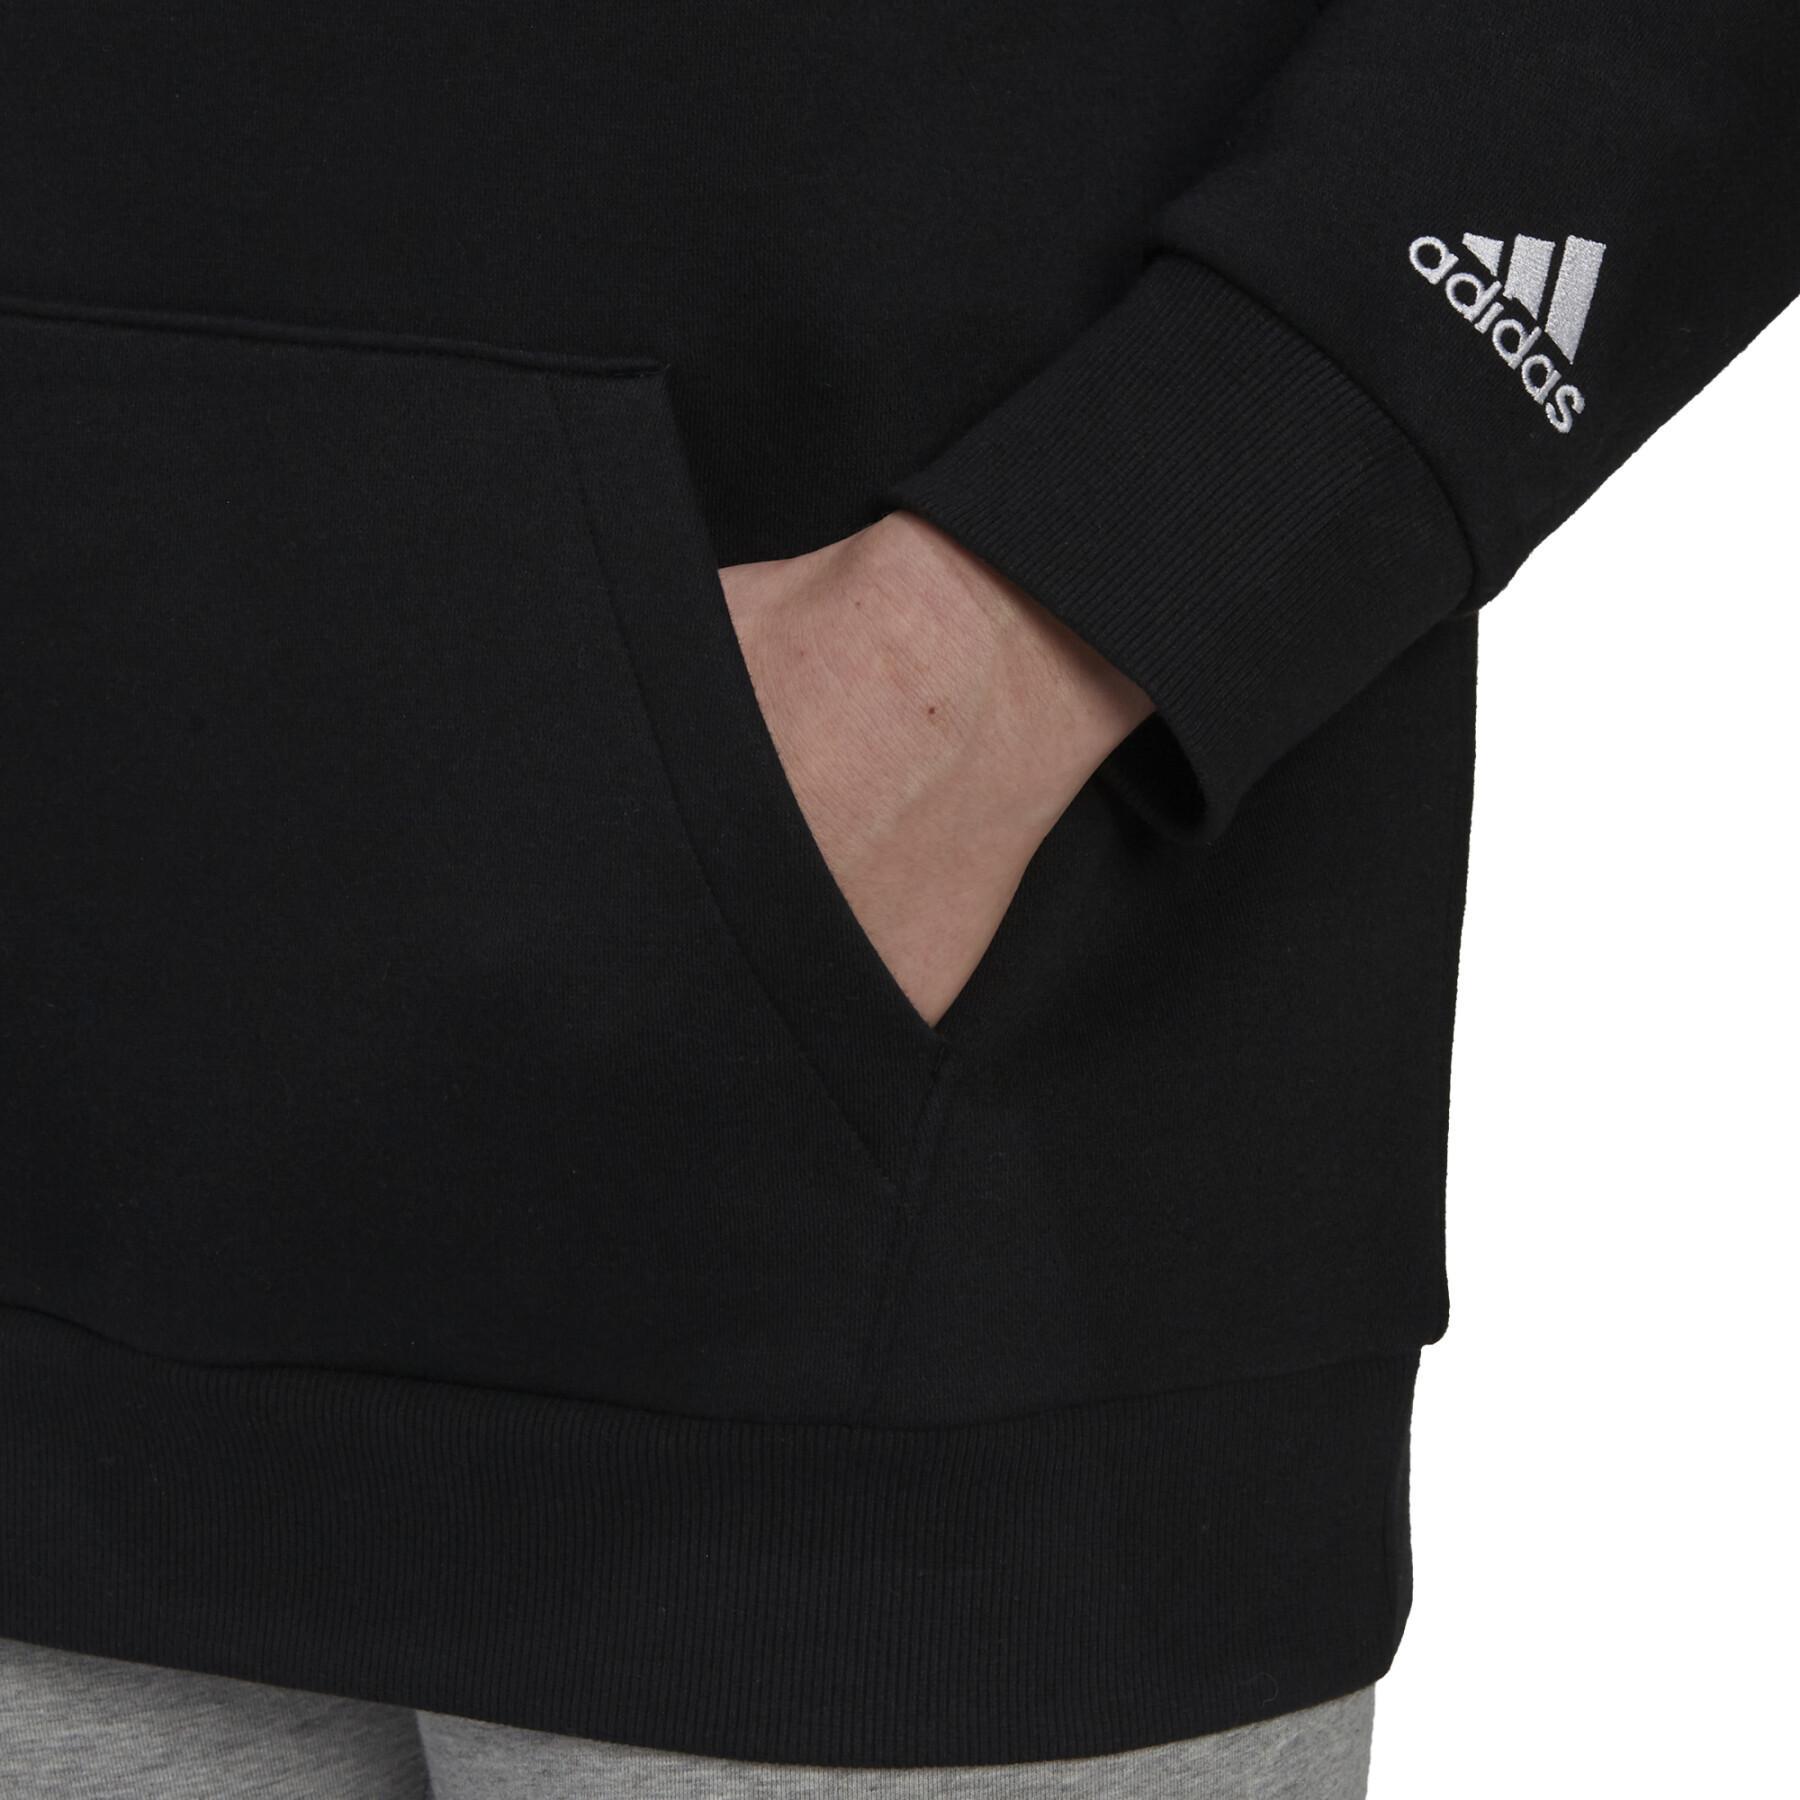 Women's oversized hoodie adidas Essentials Fleece